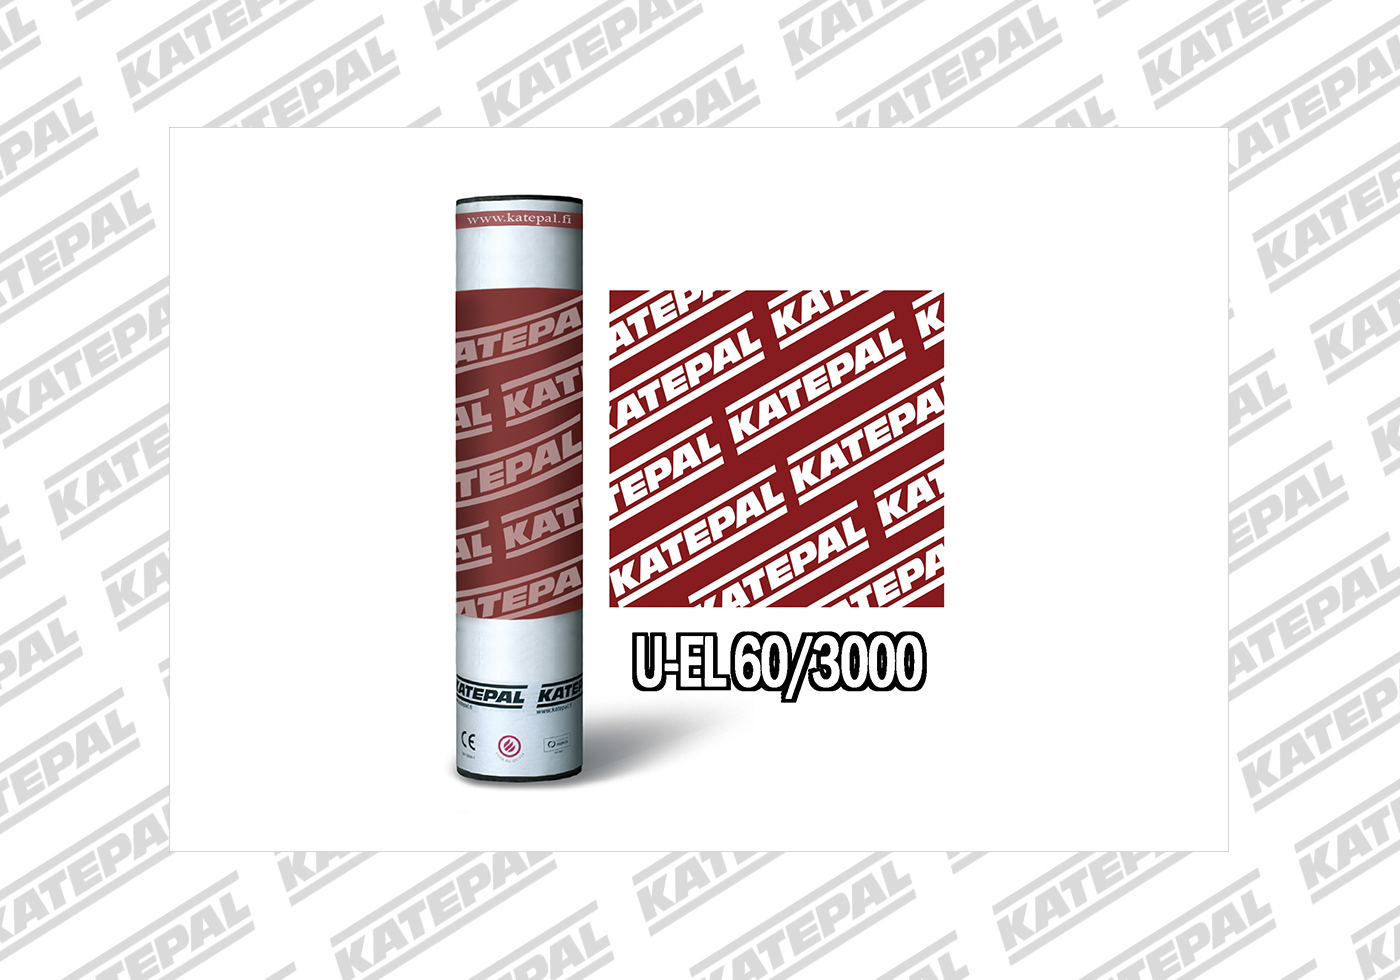 Кровельный материал Катепал U-EL 60/3000